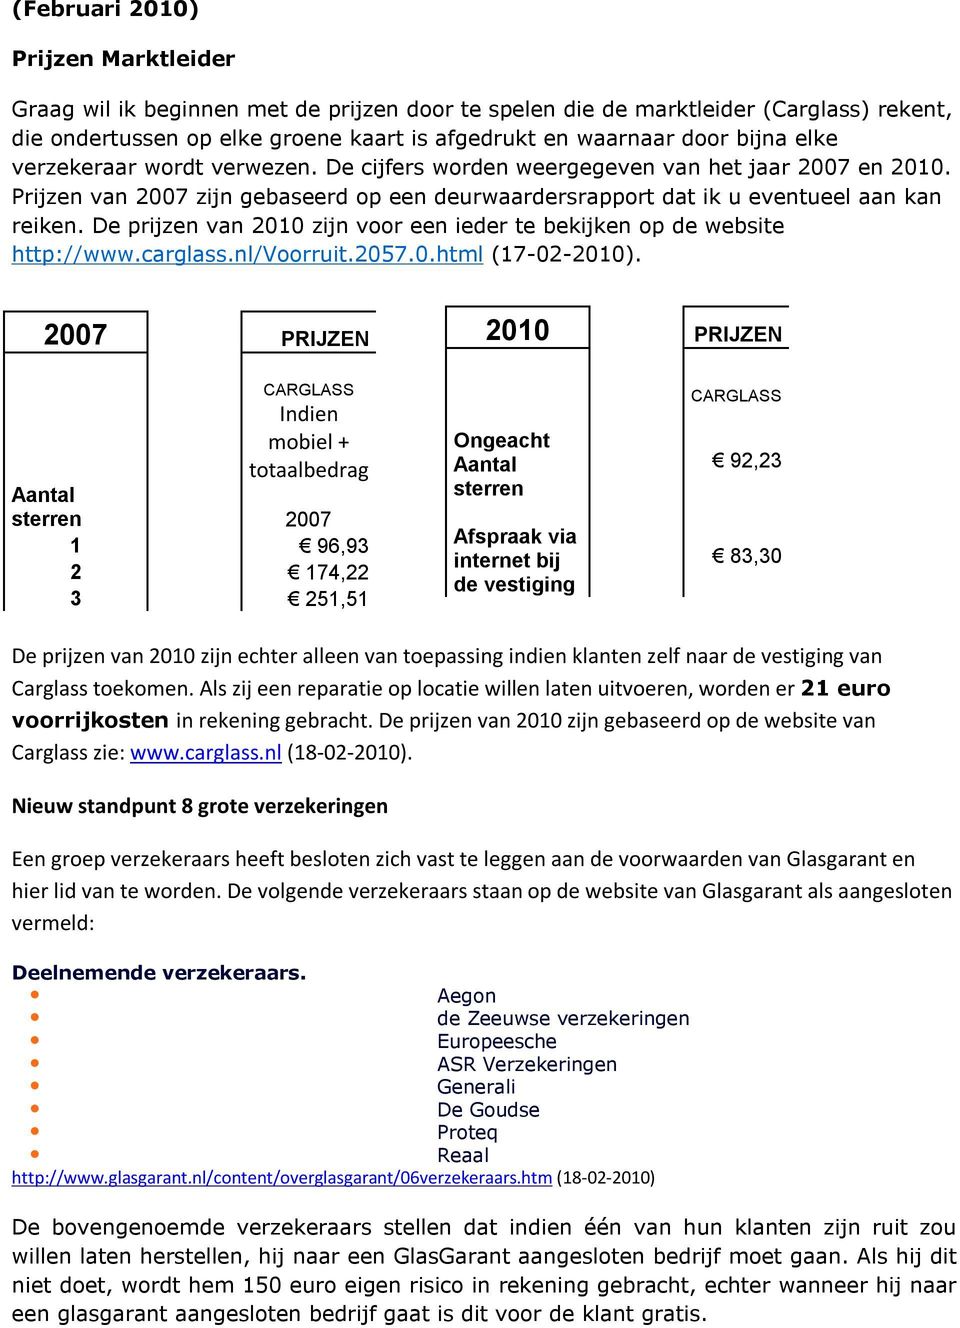 De prijzen van 2010 zijn voor een ieder te bekijken op de website http://www.carglass.nl/voorruit.2057.0.html (17-02-2010).